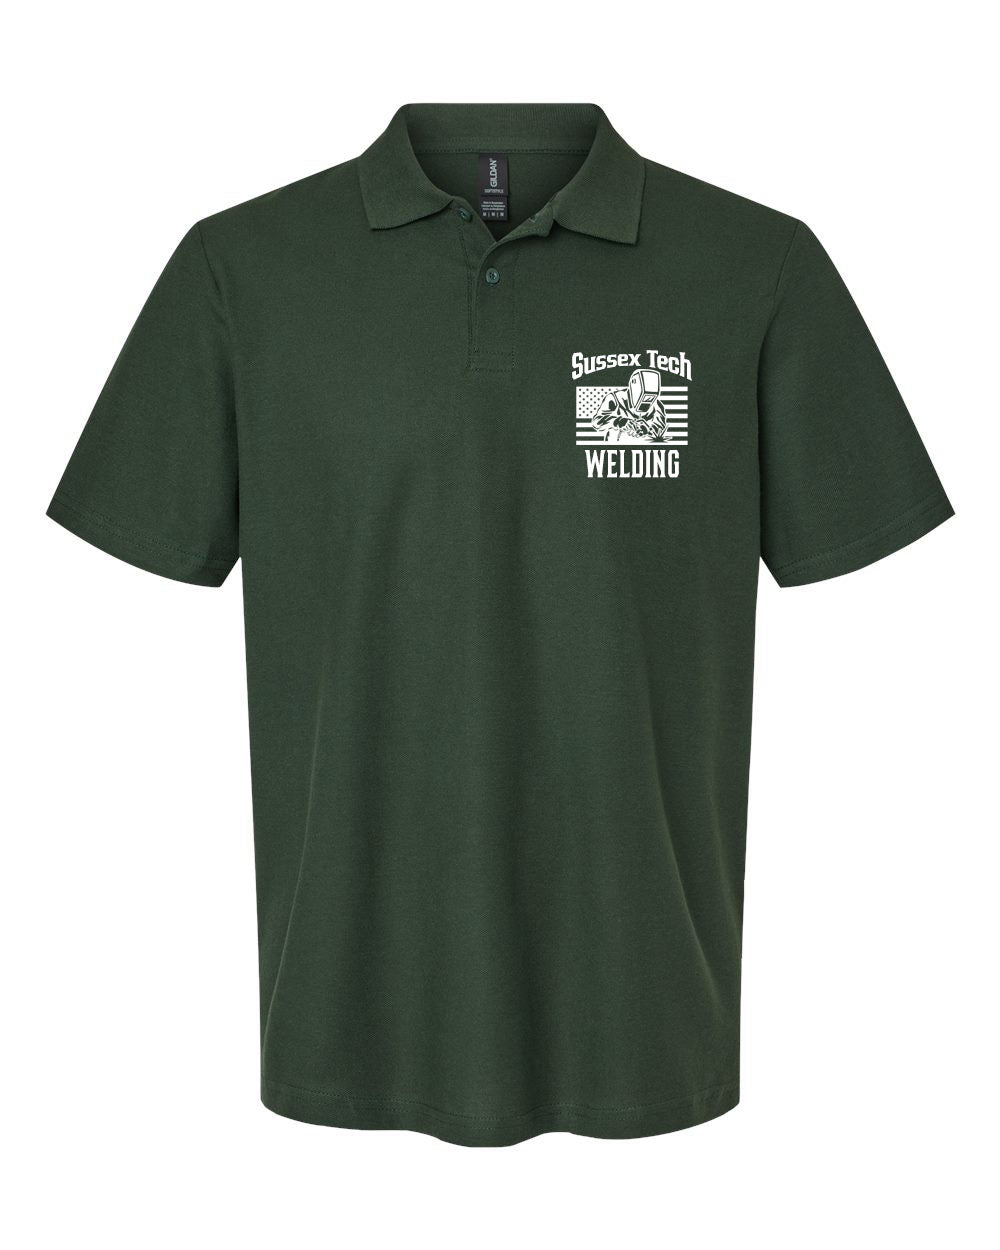 Sussex Tech Welding design 1 Polo T-Shirt